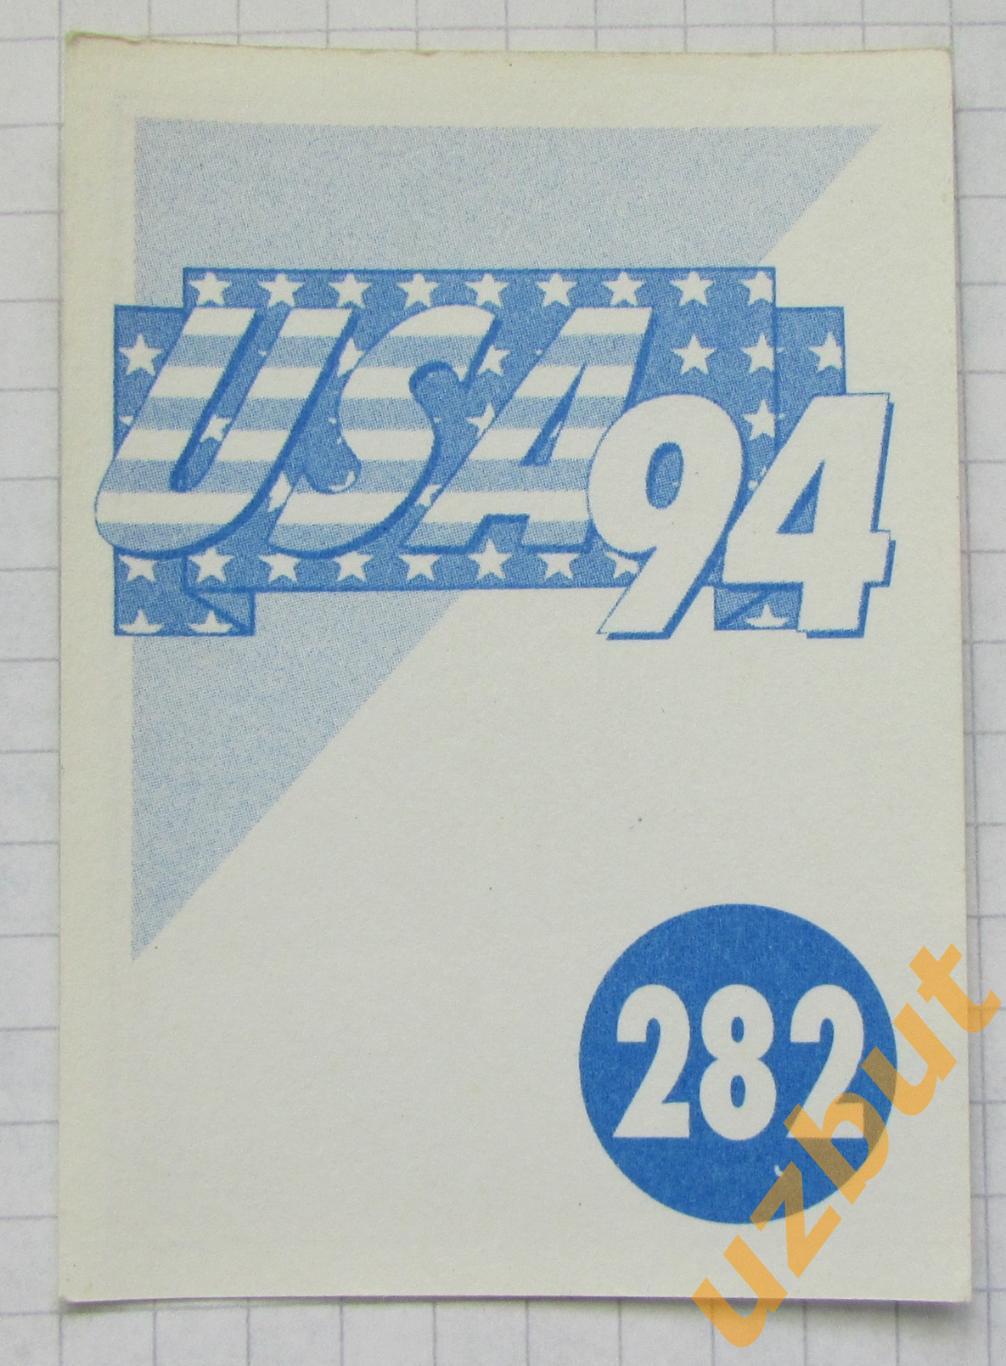 Наклейка Стадион Нью-Йорк 2 № 282 Euroflash ЧМ 1994 США 1